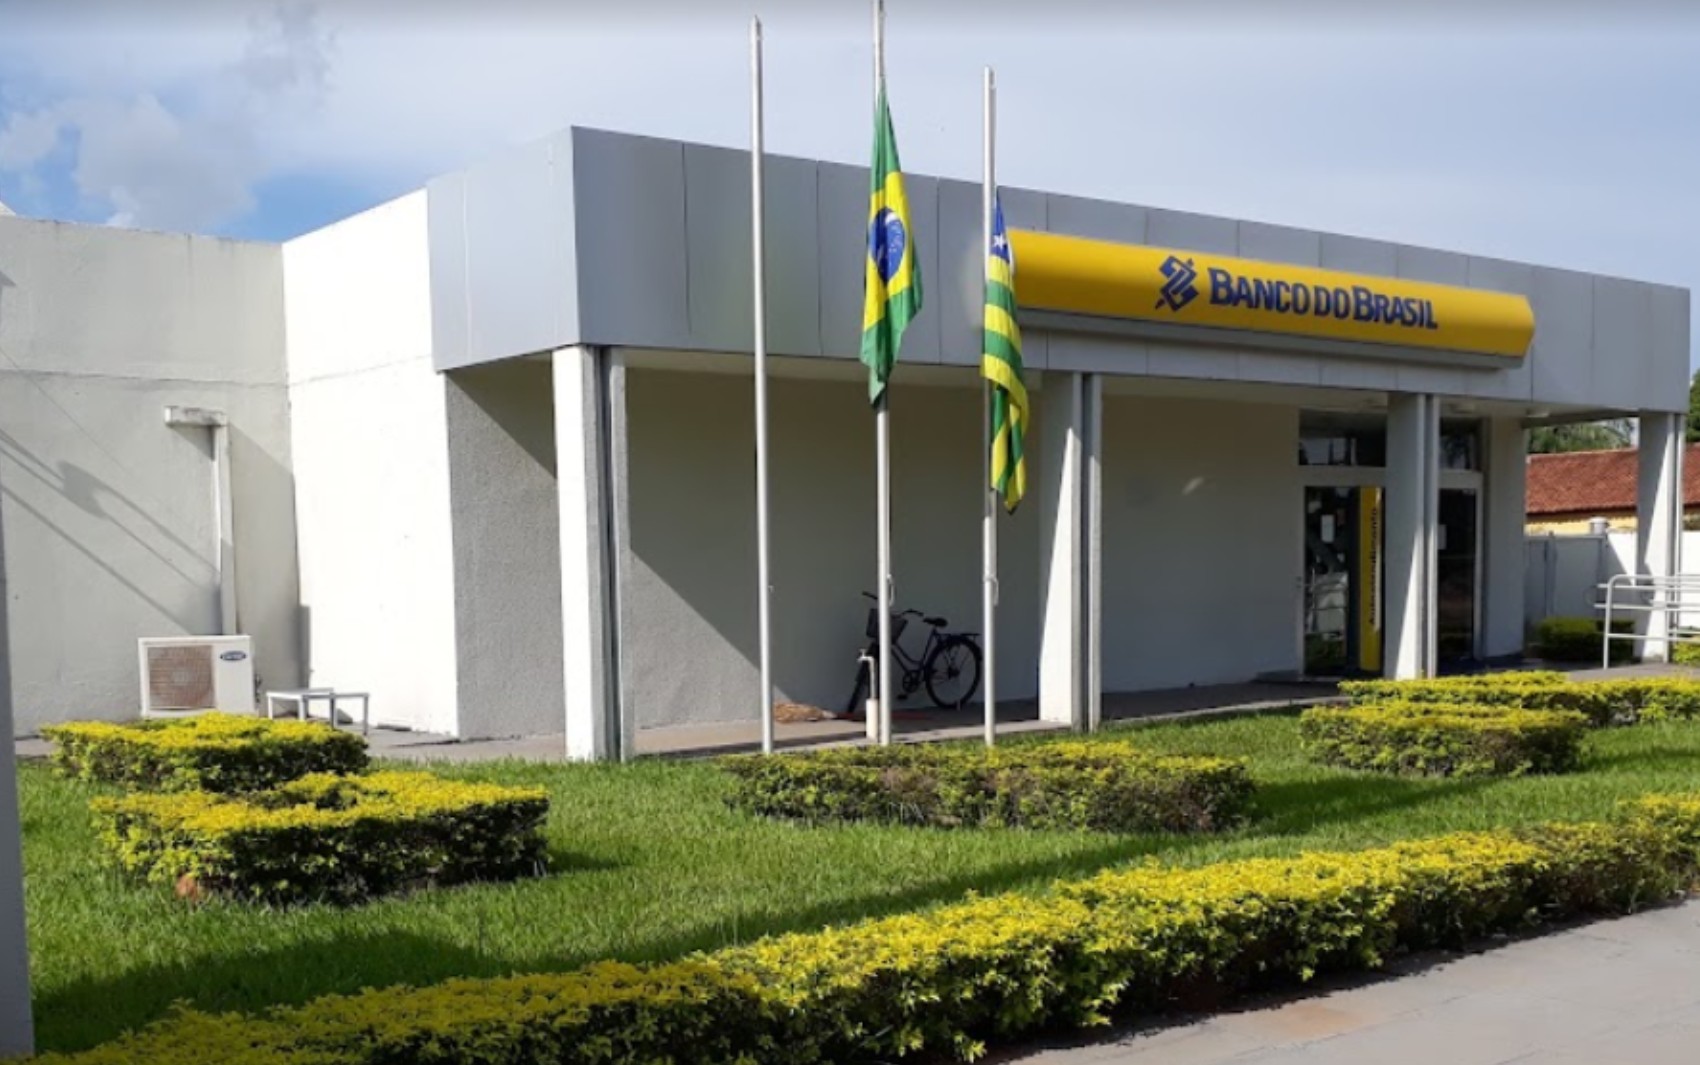 Agência do Banco do Brasil de Itapirapuã, Goiás - Reprodução/Google Maps